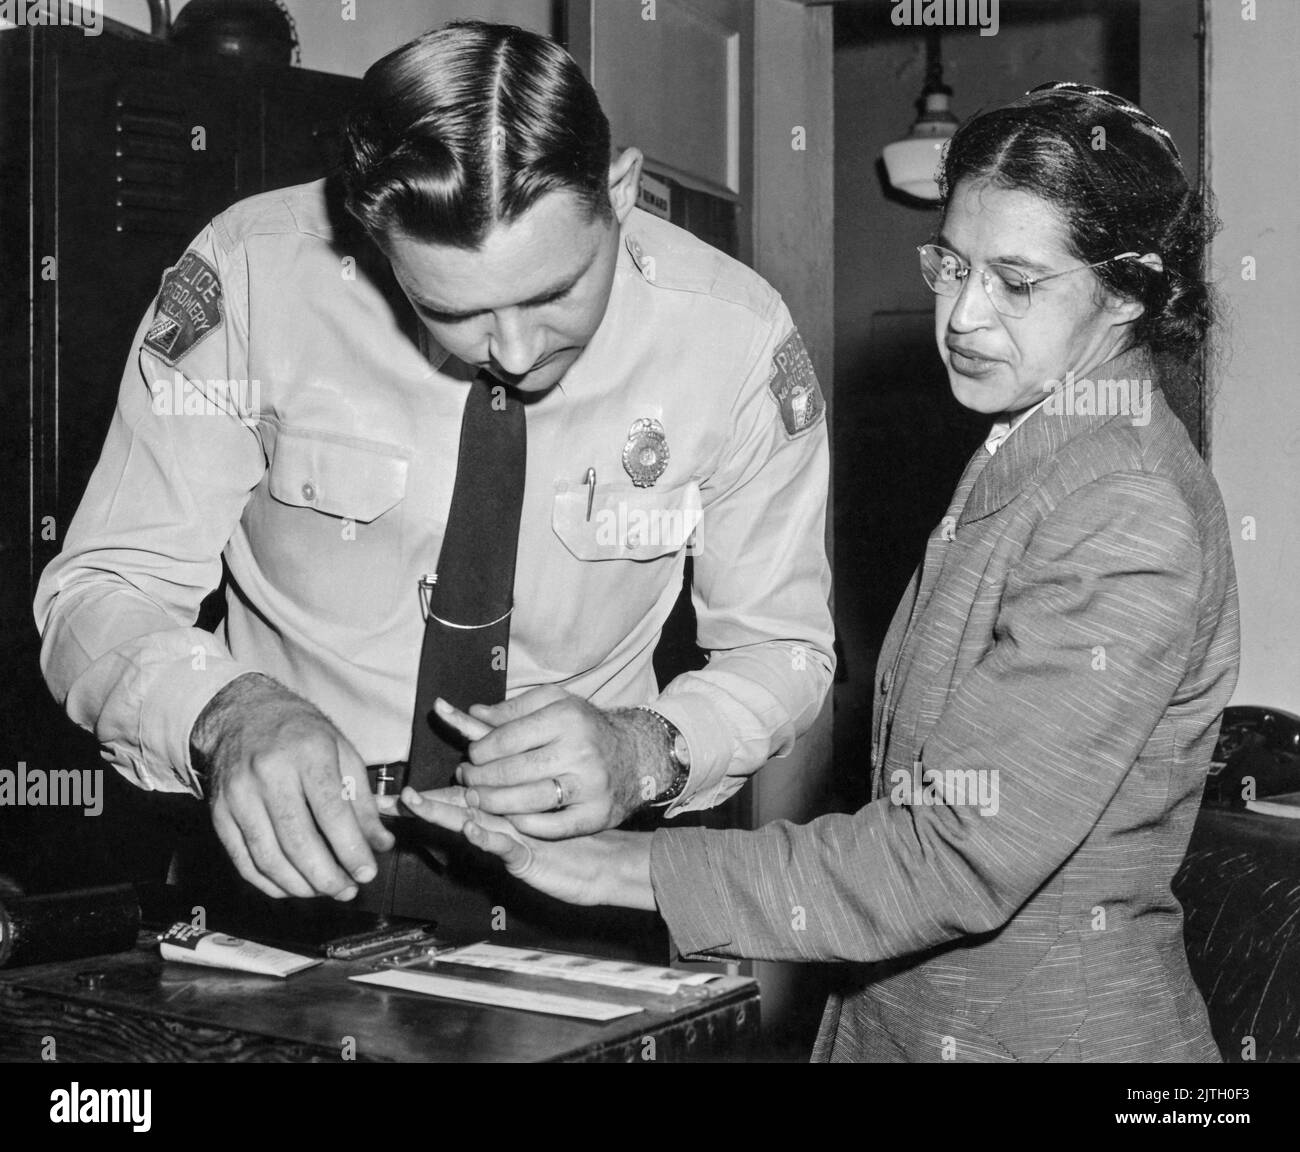 Rosa Parks è stato impronte il 22 febbraio 1956, dal tenente D.H. Lackey come una delle persone accusate come leader del boicottaggio Montgomery bus. Era una delle 73 persone arrotondate dai deputati quel giorno dopo che una grande giuria ha incaricato 113 afroamericani per l'organizzazione del boicottaggio. Questo è stato pochi mesi dopo il suo arresto il 1 dicembre 1955, per il rifiuto di rinunciare al suo posto a un passeggero bianco su un autobus municipale segregato a Montgomery, Alabama. Foto Stock